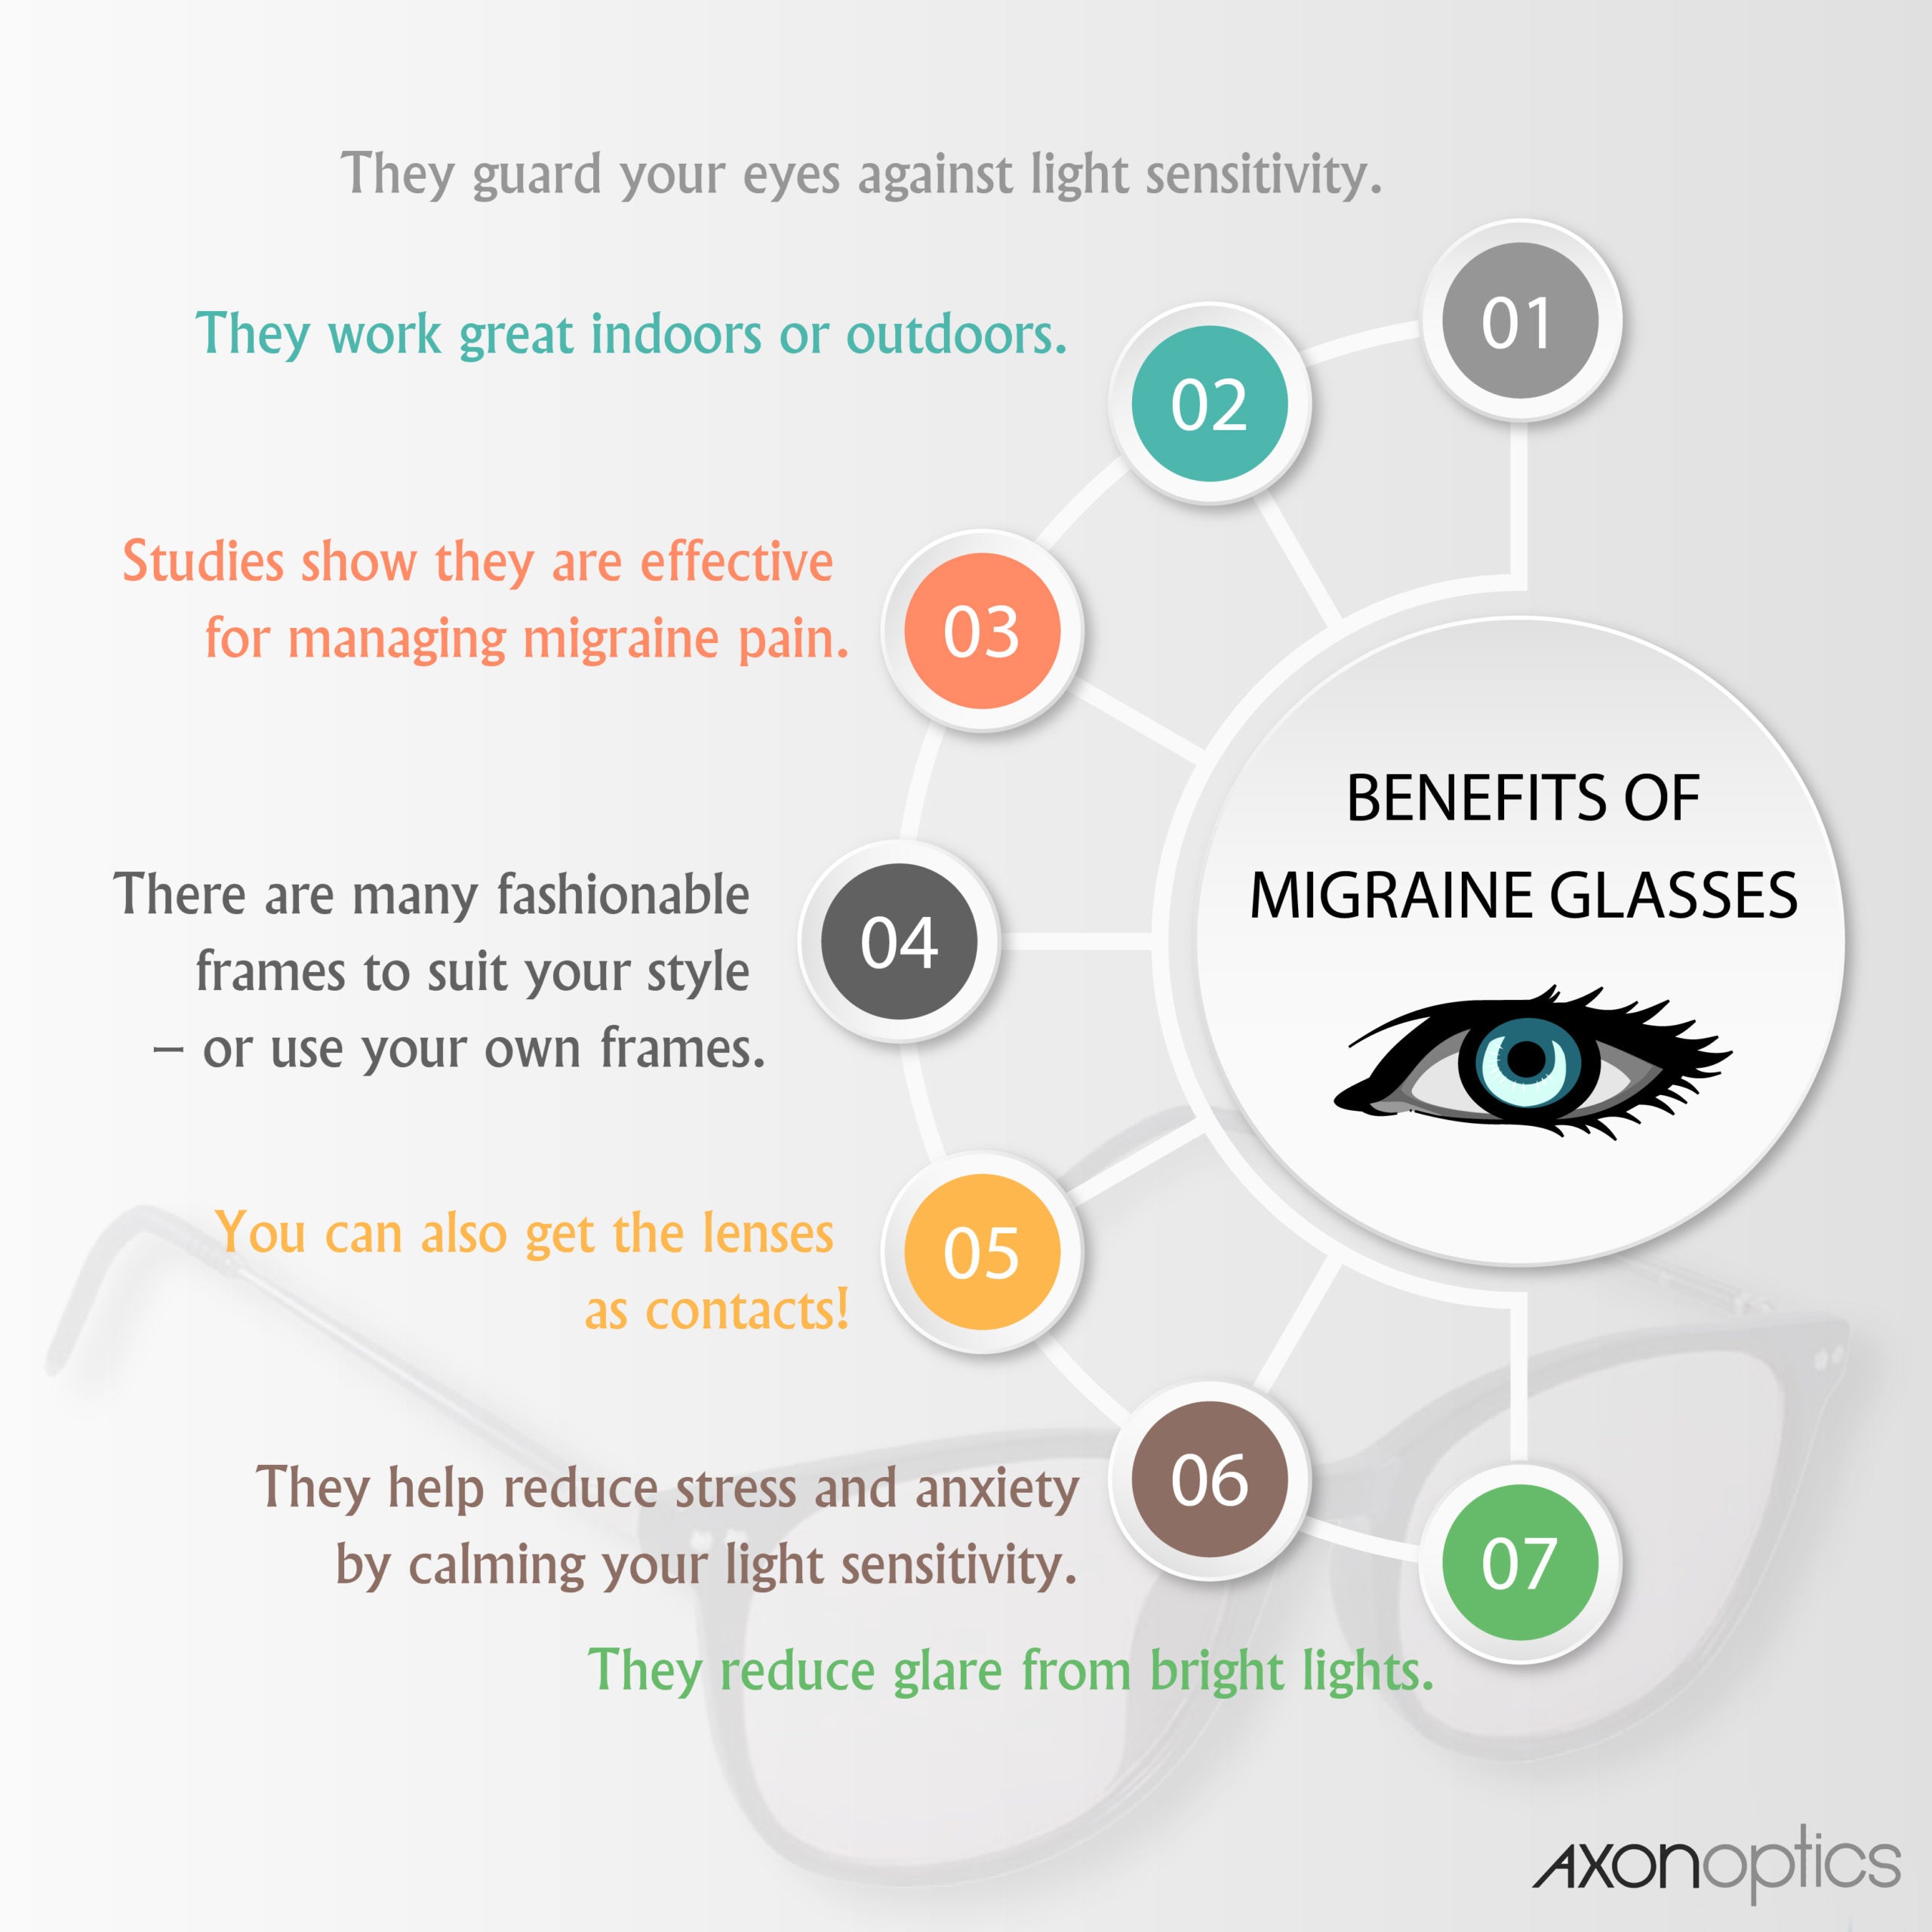 7 Benefits of Migraine Glasses